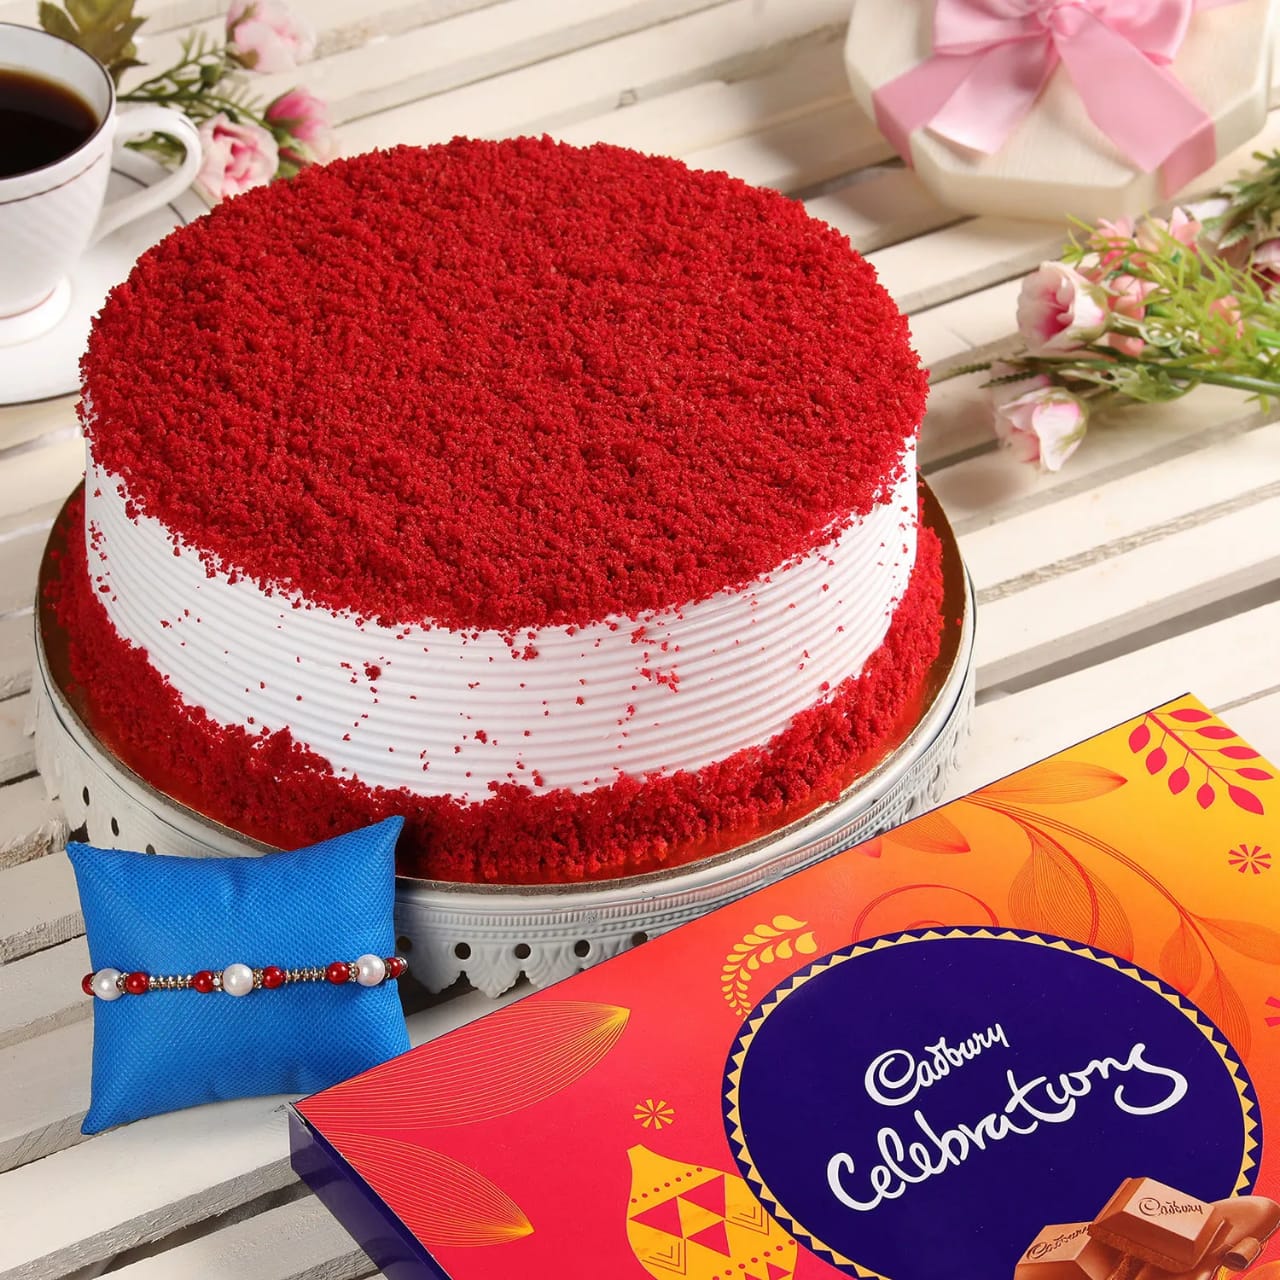 Red Velvet Cake With Rakhi and Celebration Box